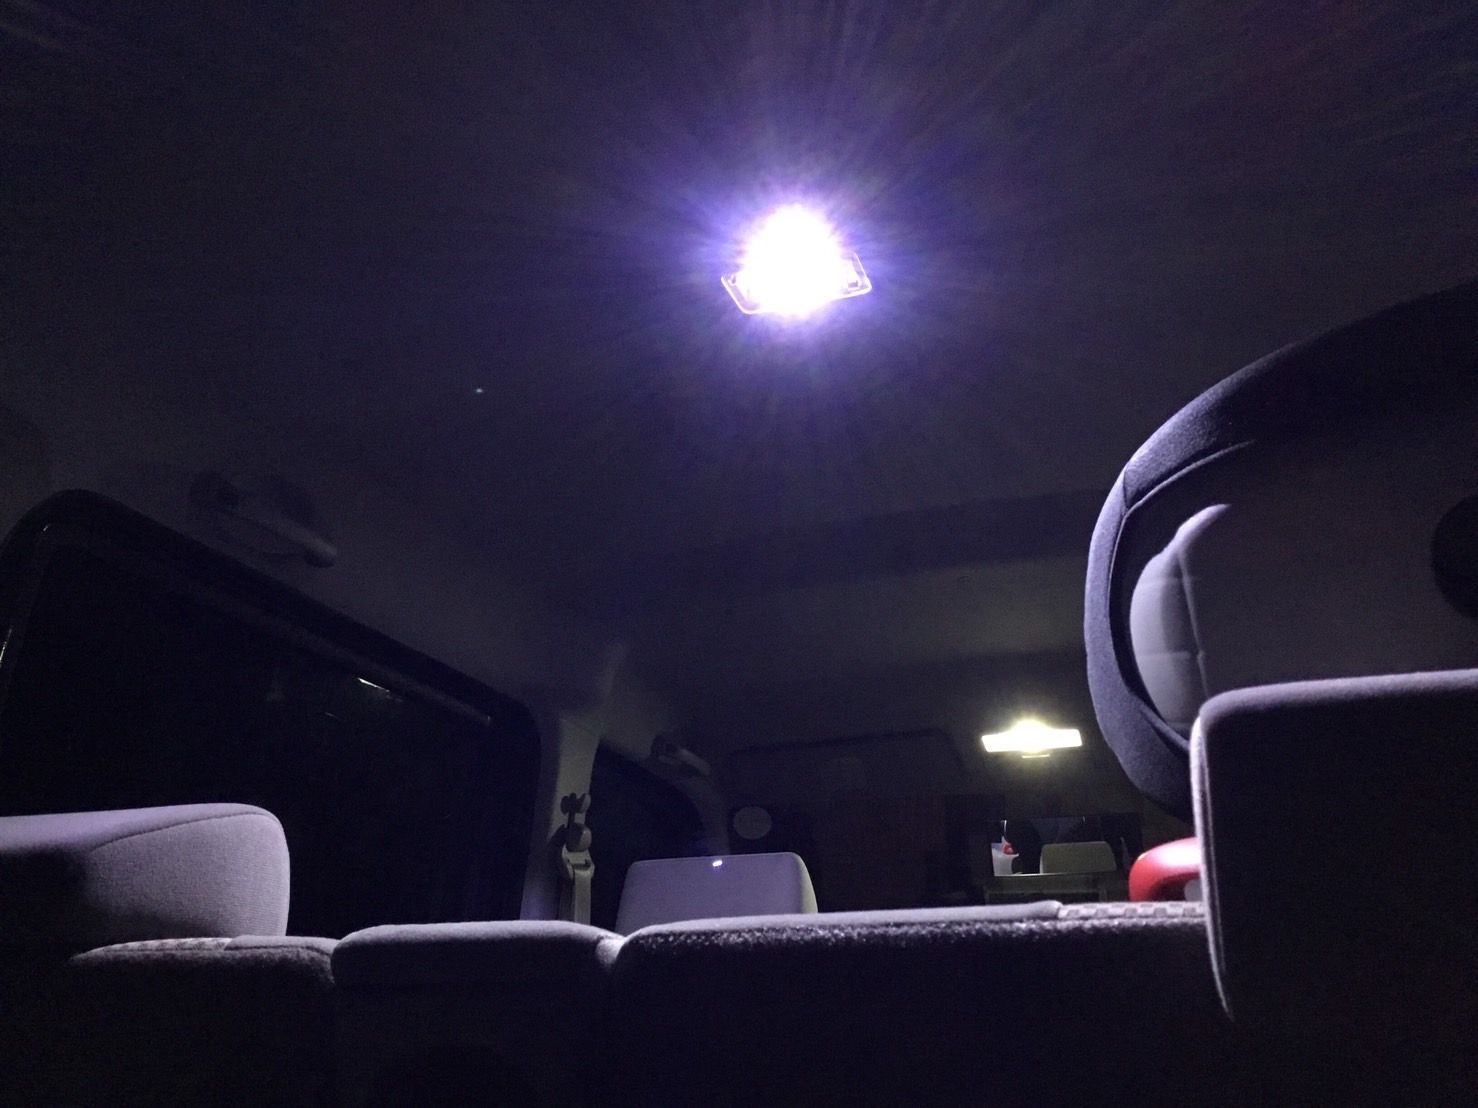 MK21S パレット LED ルームランプ ウェッジ球セット T10 COB全面発光 バックランプ 車内灯 リバースランプ ヘッドライト パーツ -  メルカリ